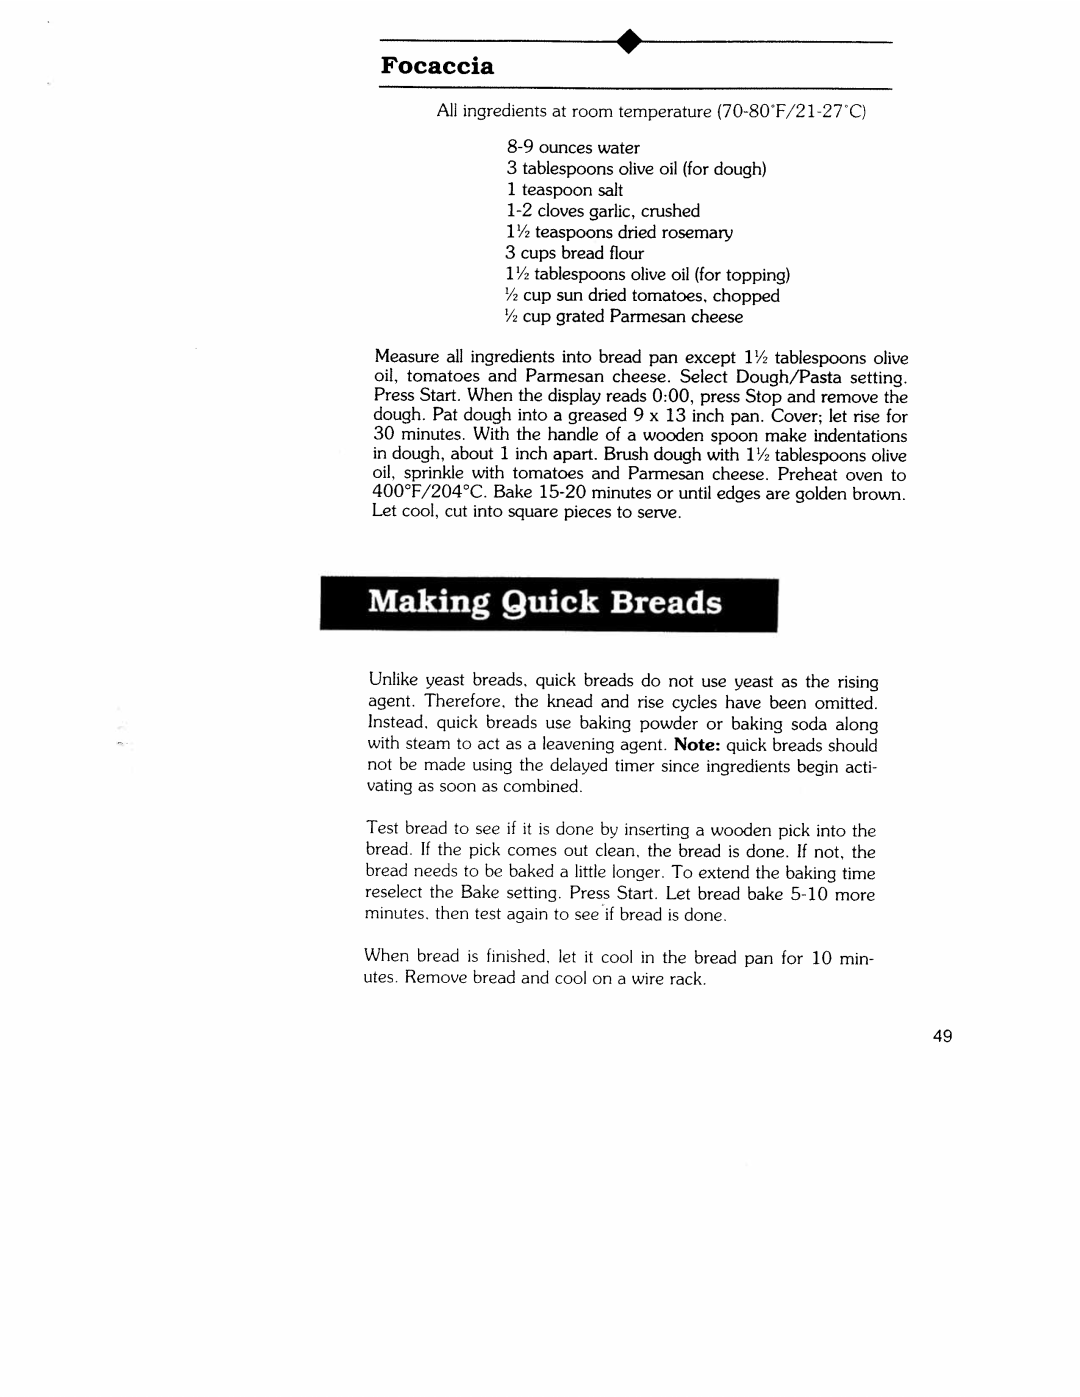 Regal Ware K6751 manual 